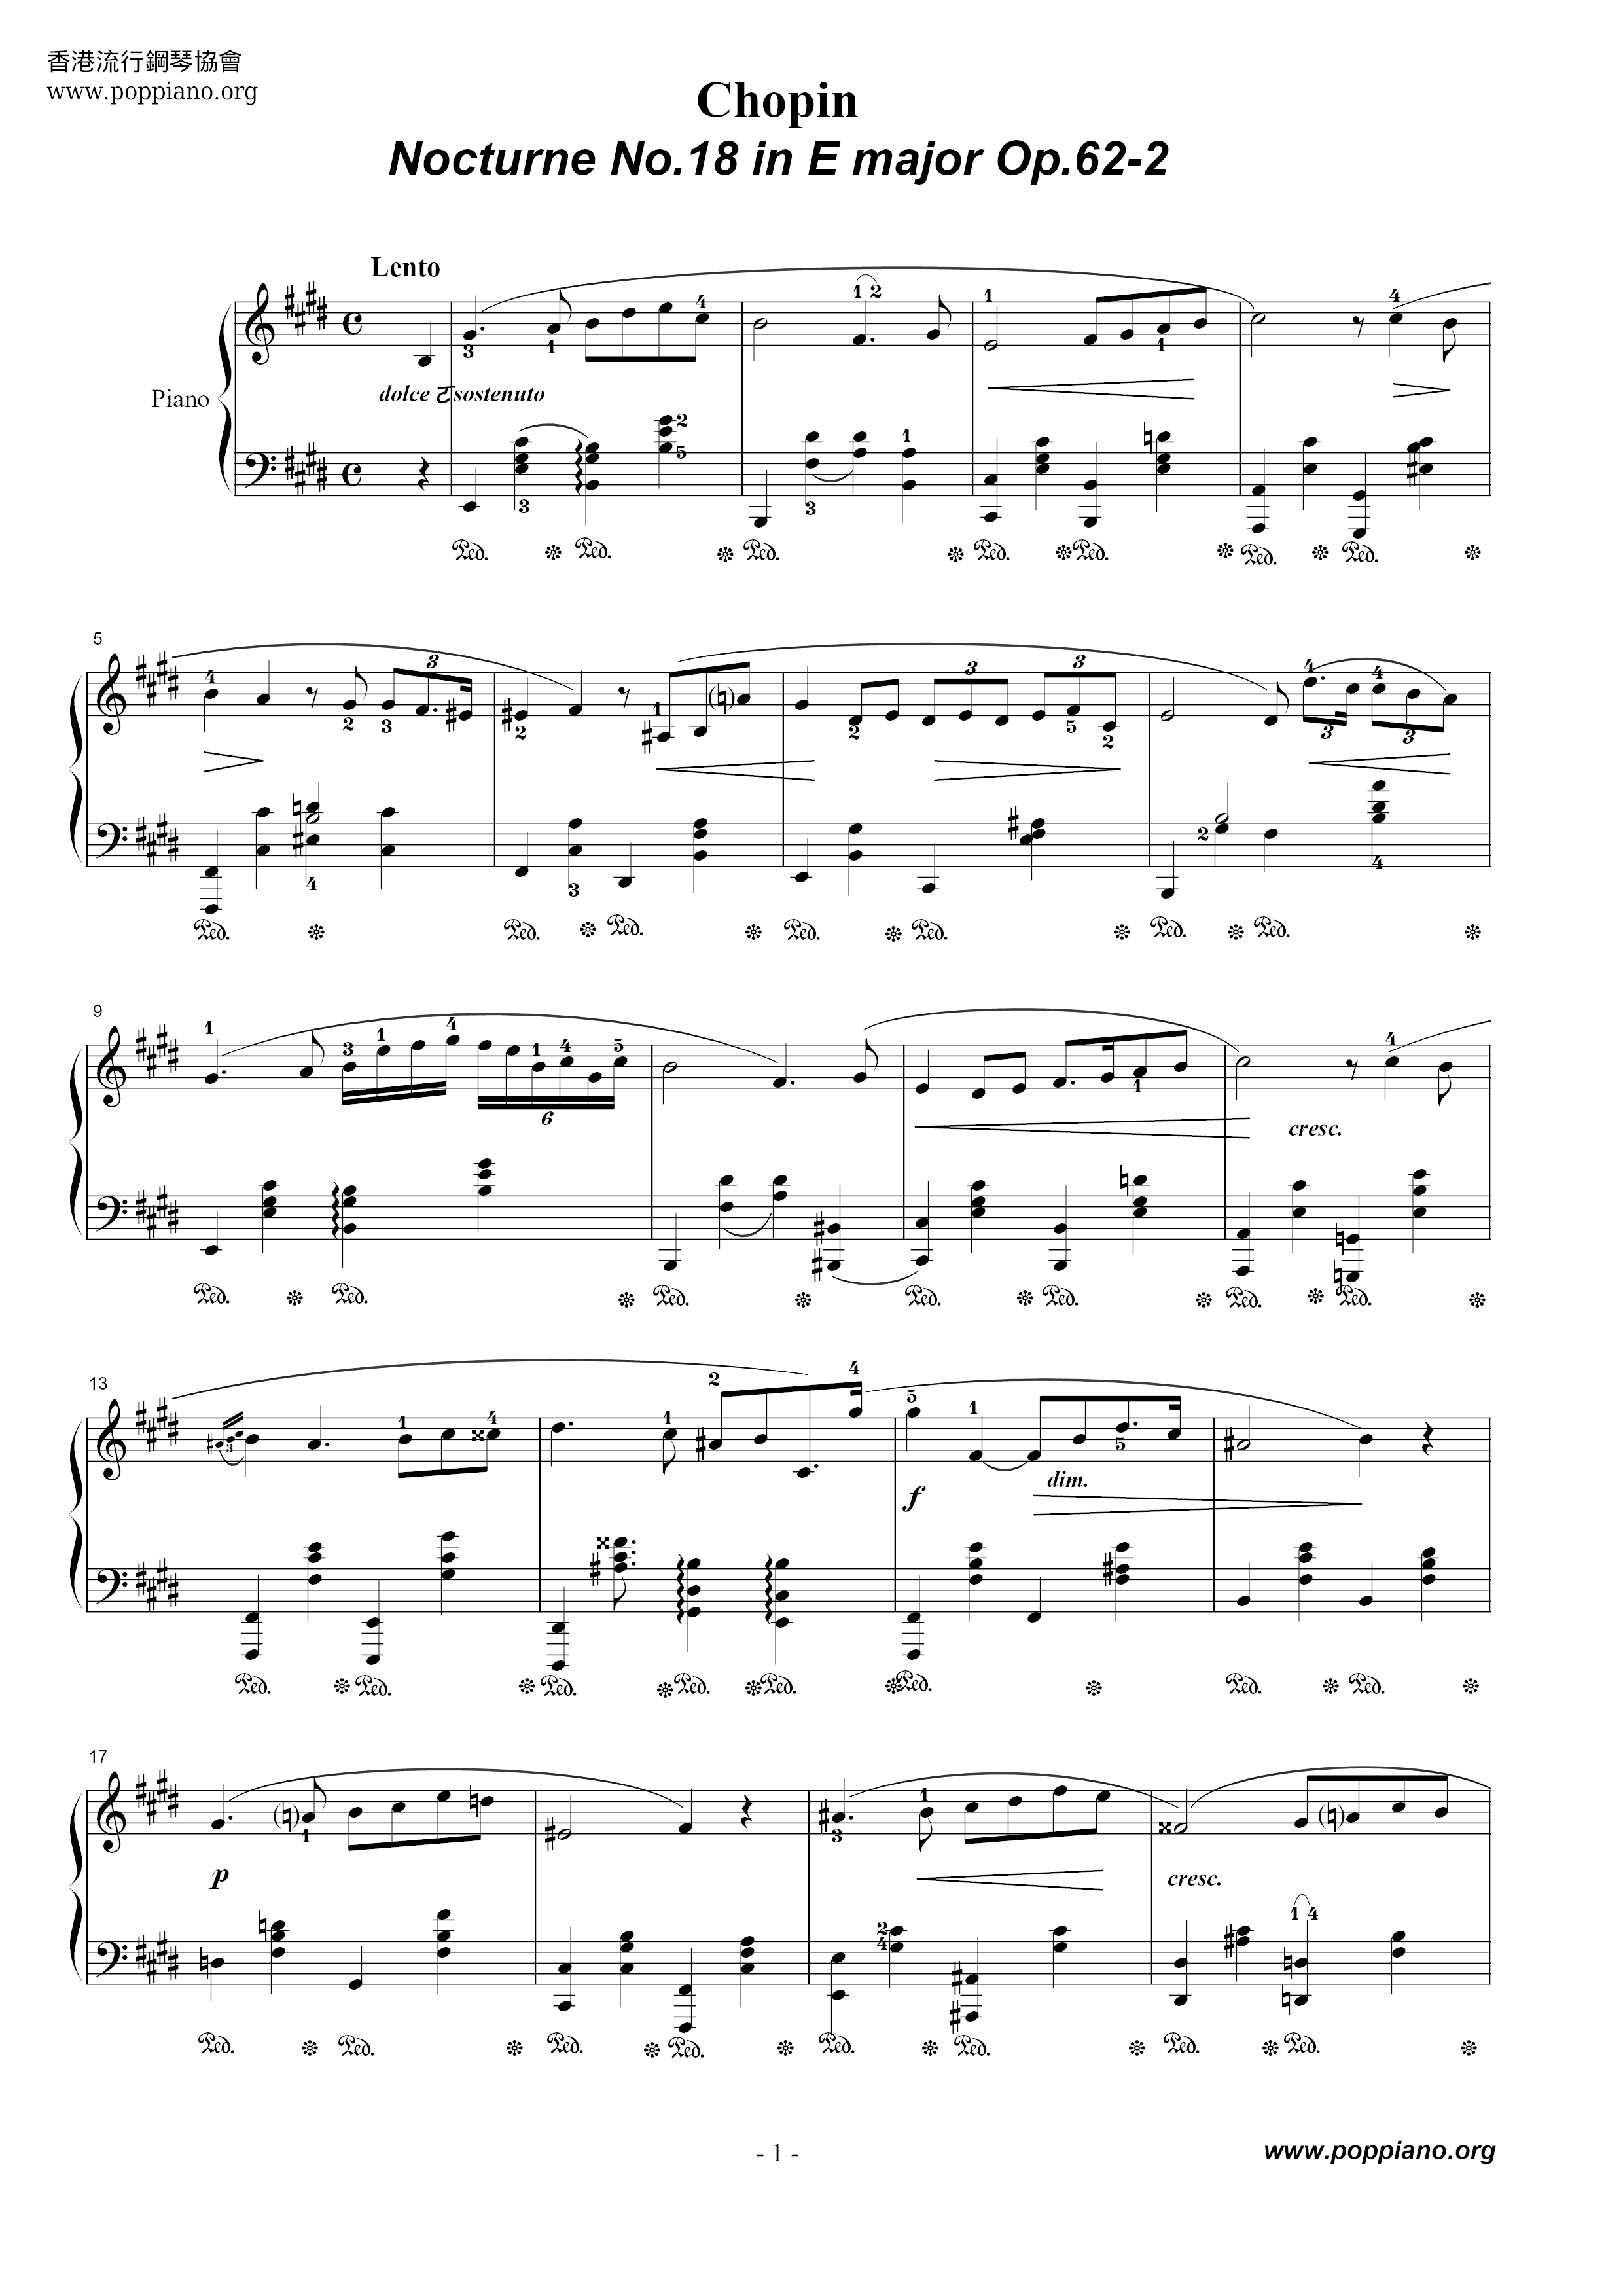 Nocturne No. 18 Op. 62 No. 2ピアノ譜